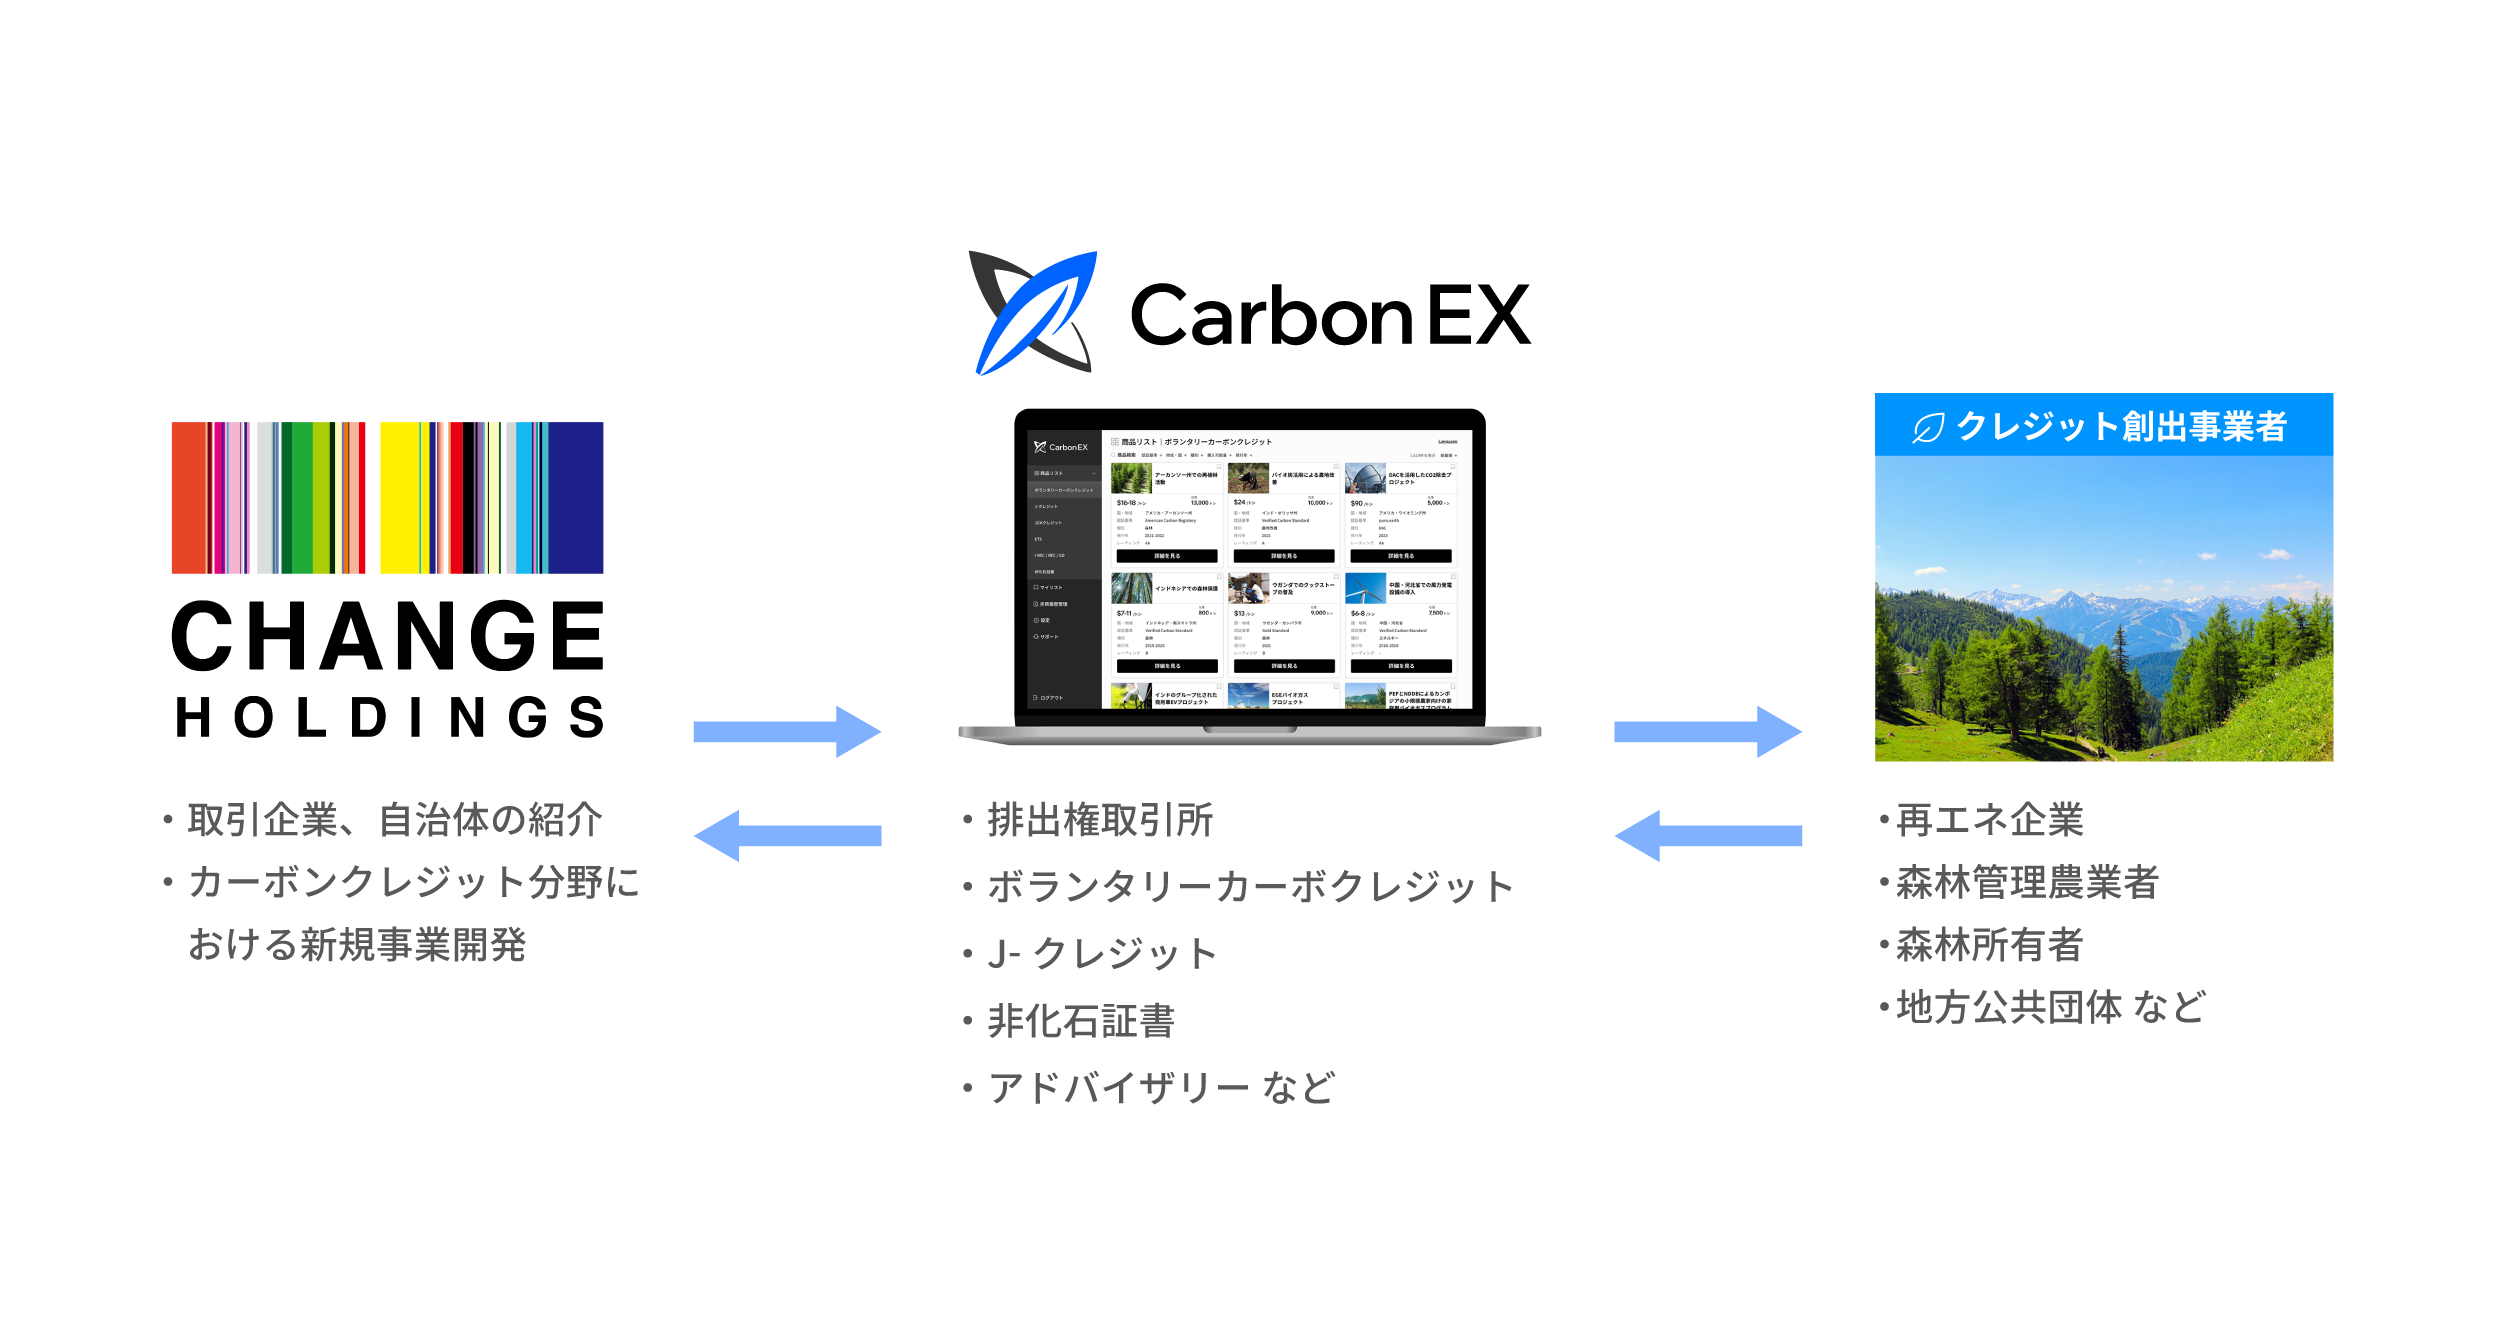 Carbon EXとチェンジホールディングスが業務提携。カーボンクレジット取引における協業に関する覚書を締結